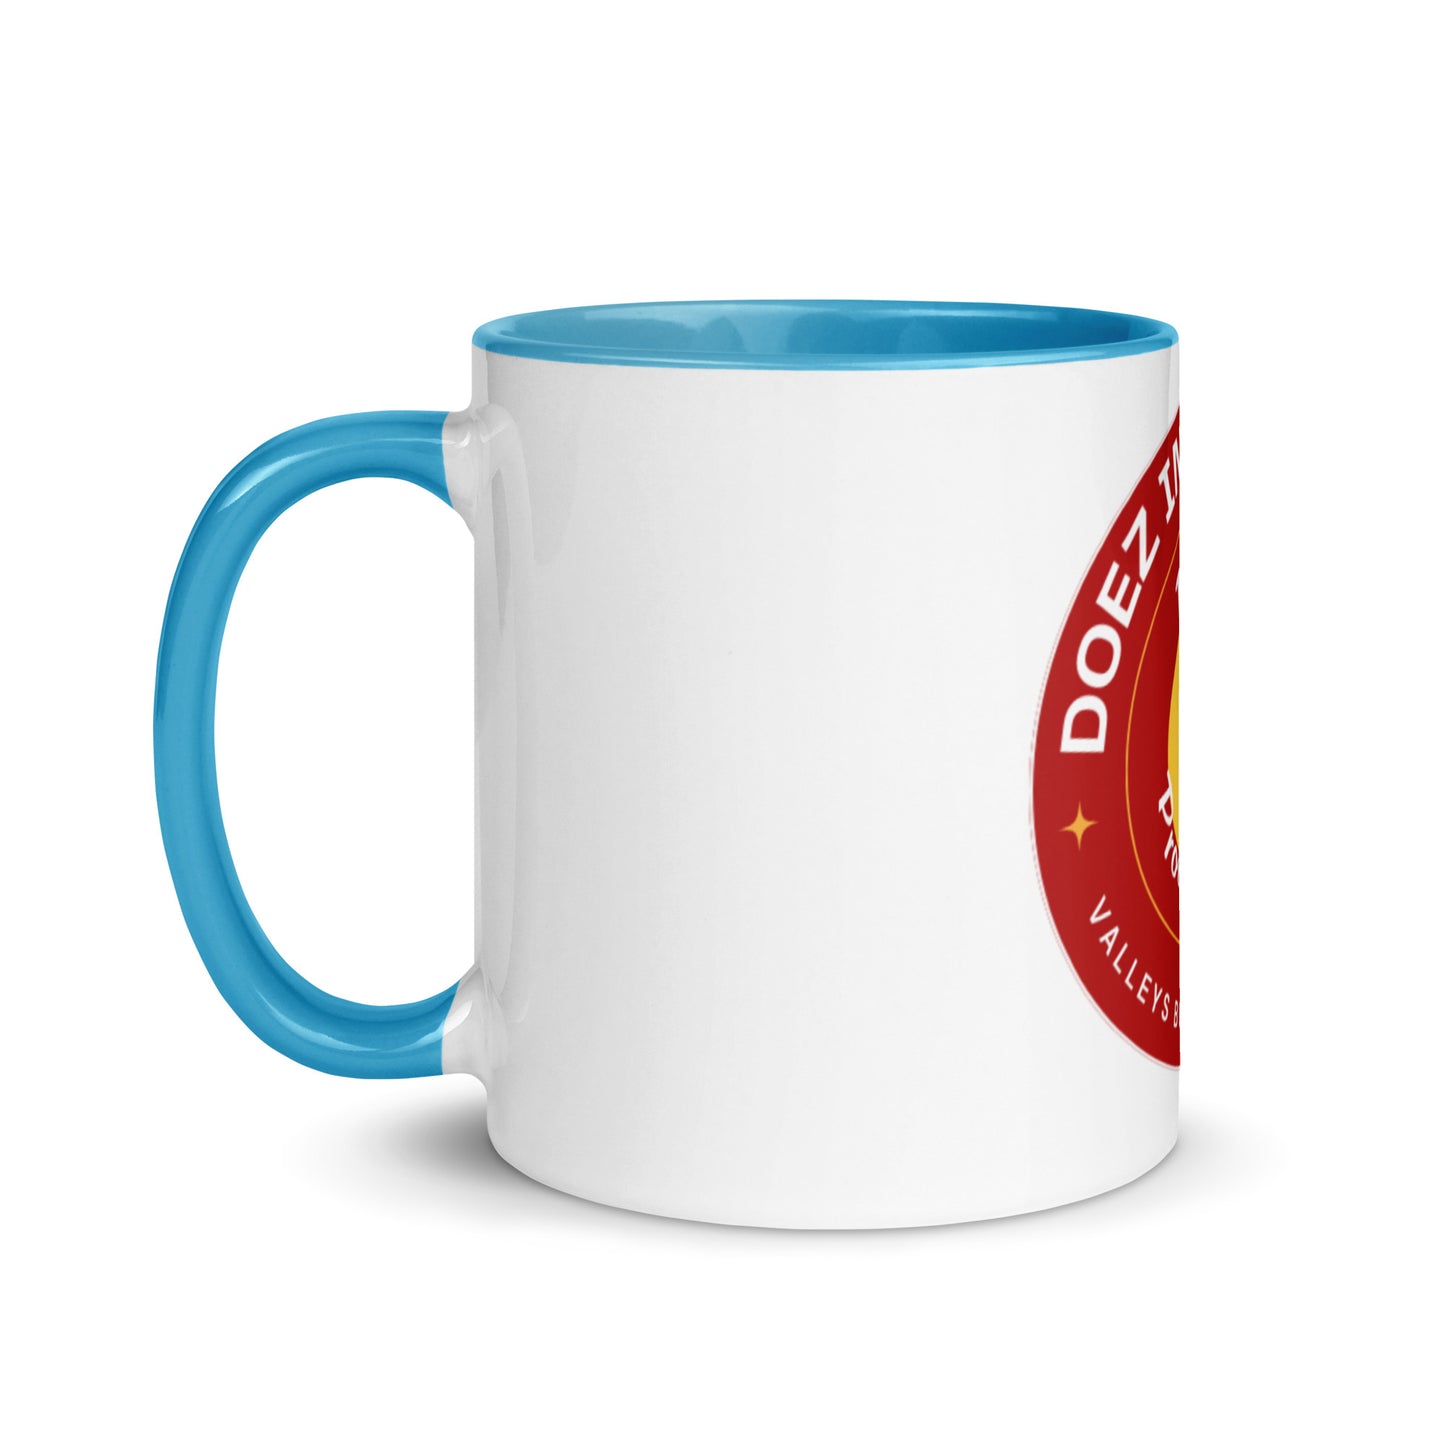 Doez Mug with Color Inside